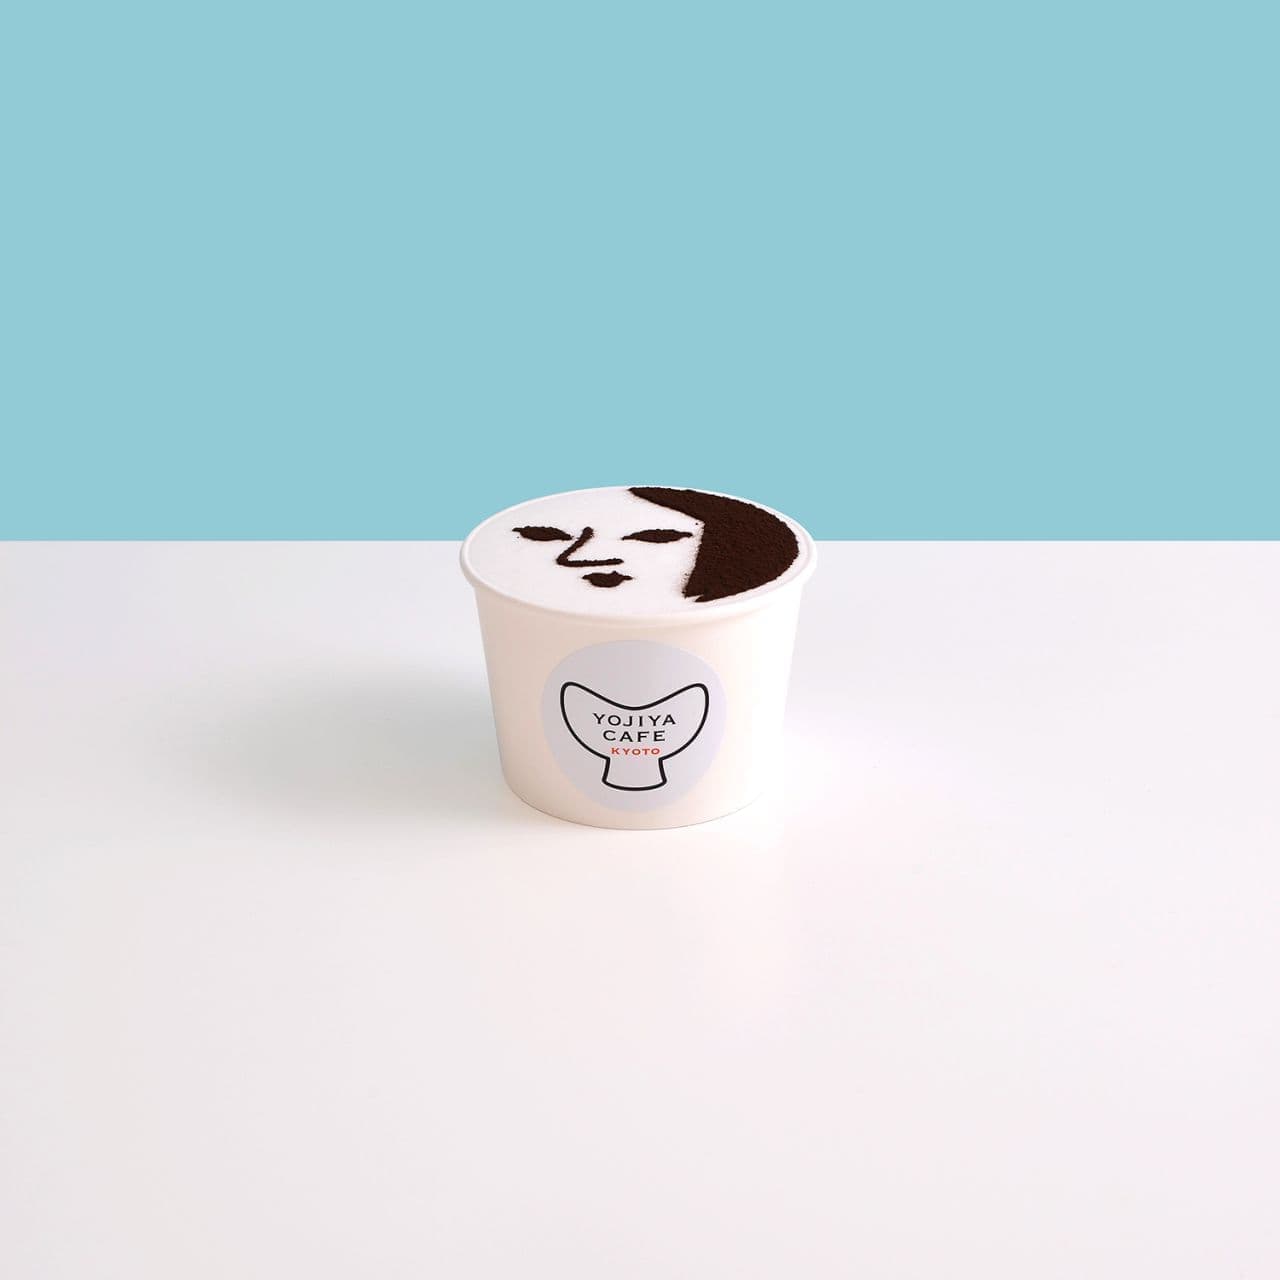 Yojiya Cafe "Cup Sweets (Soooo! (chocolate mint)"